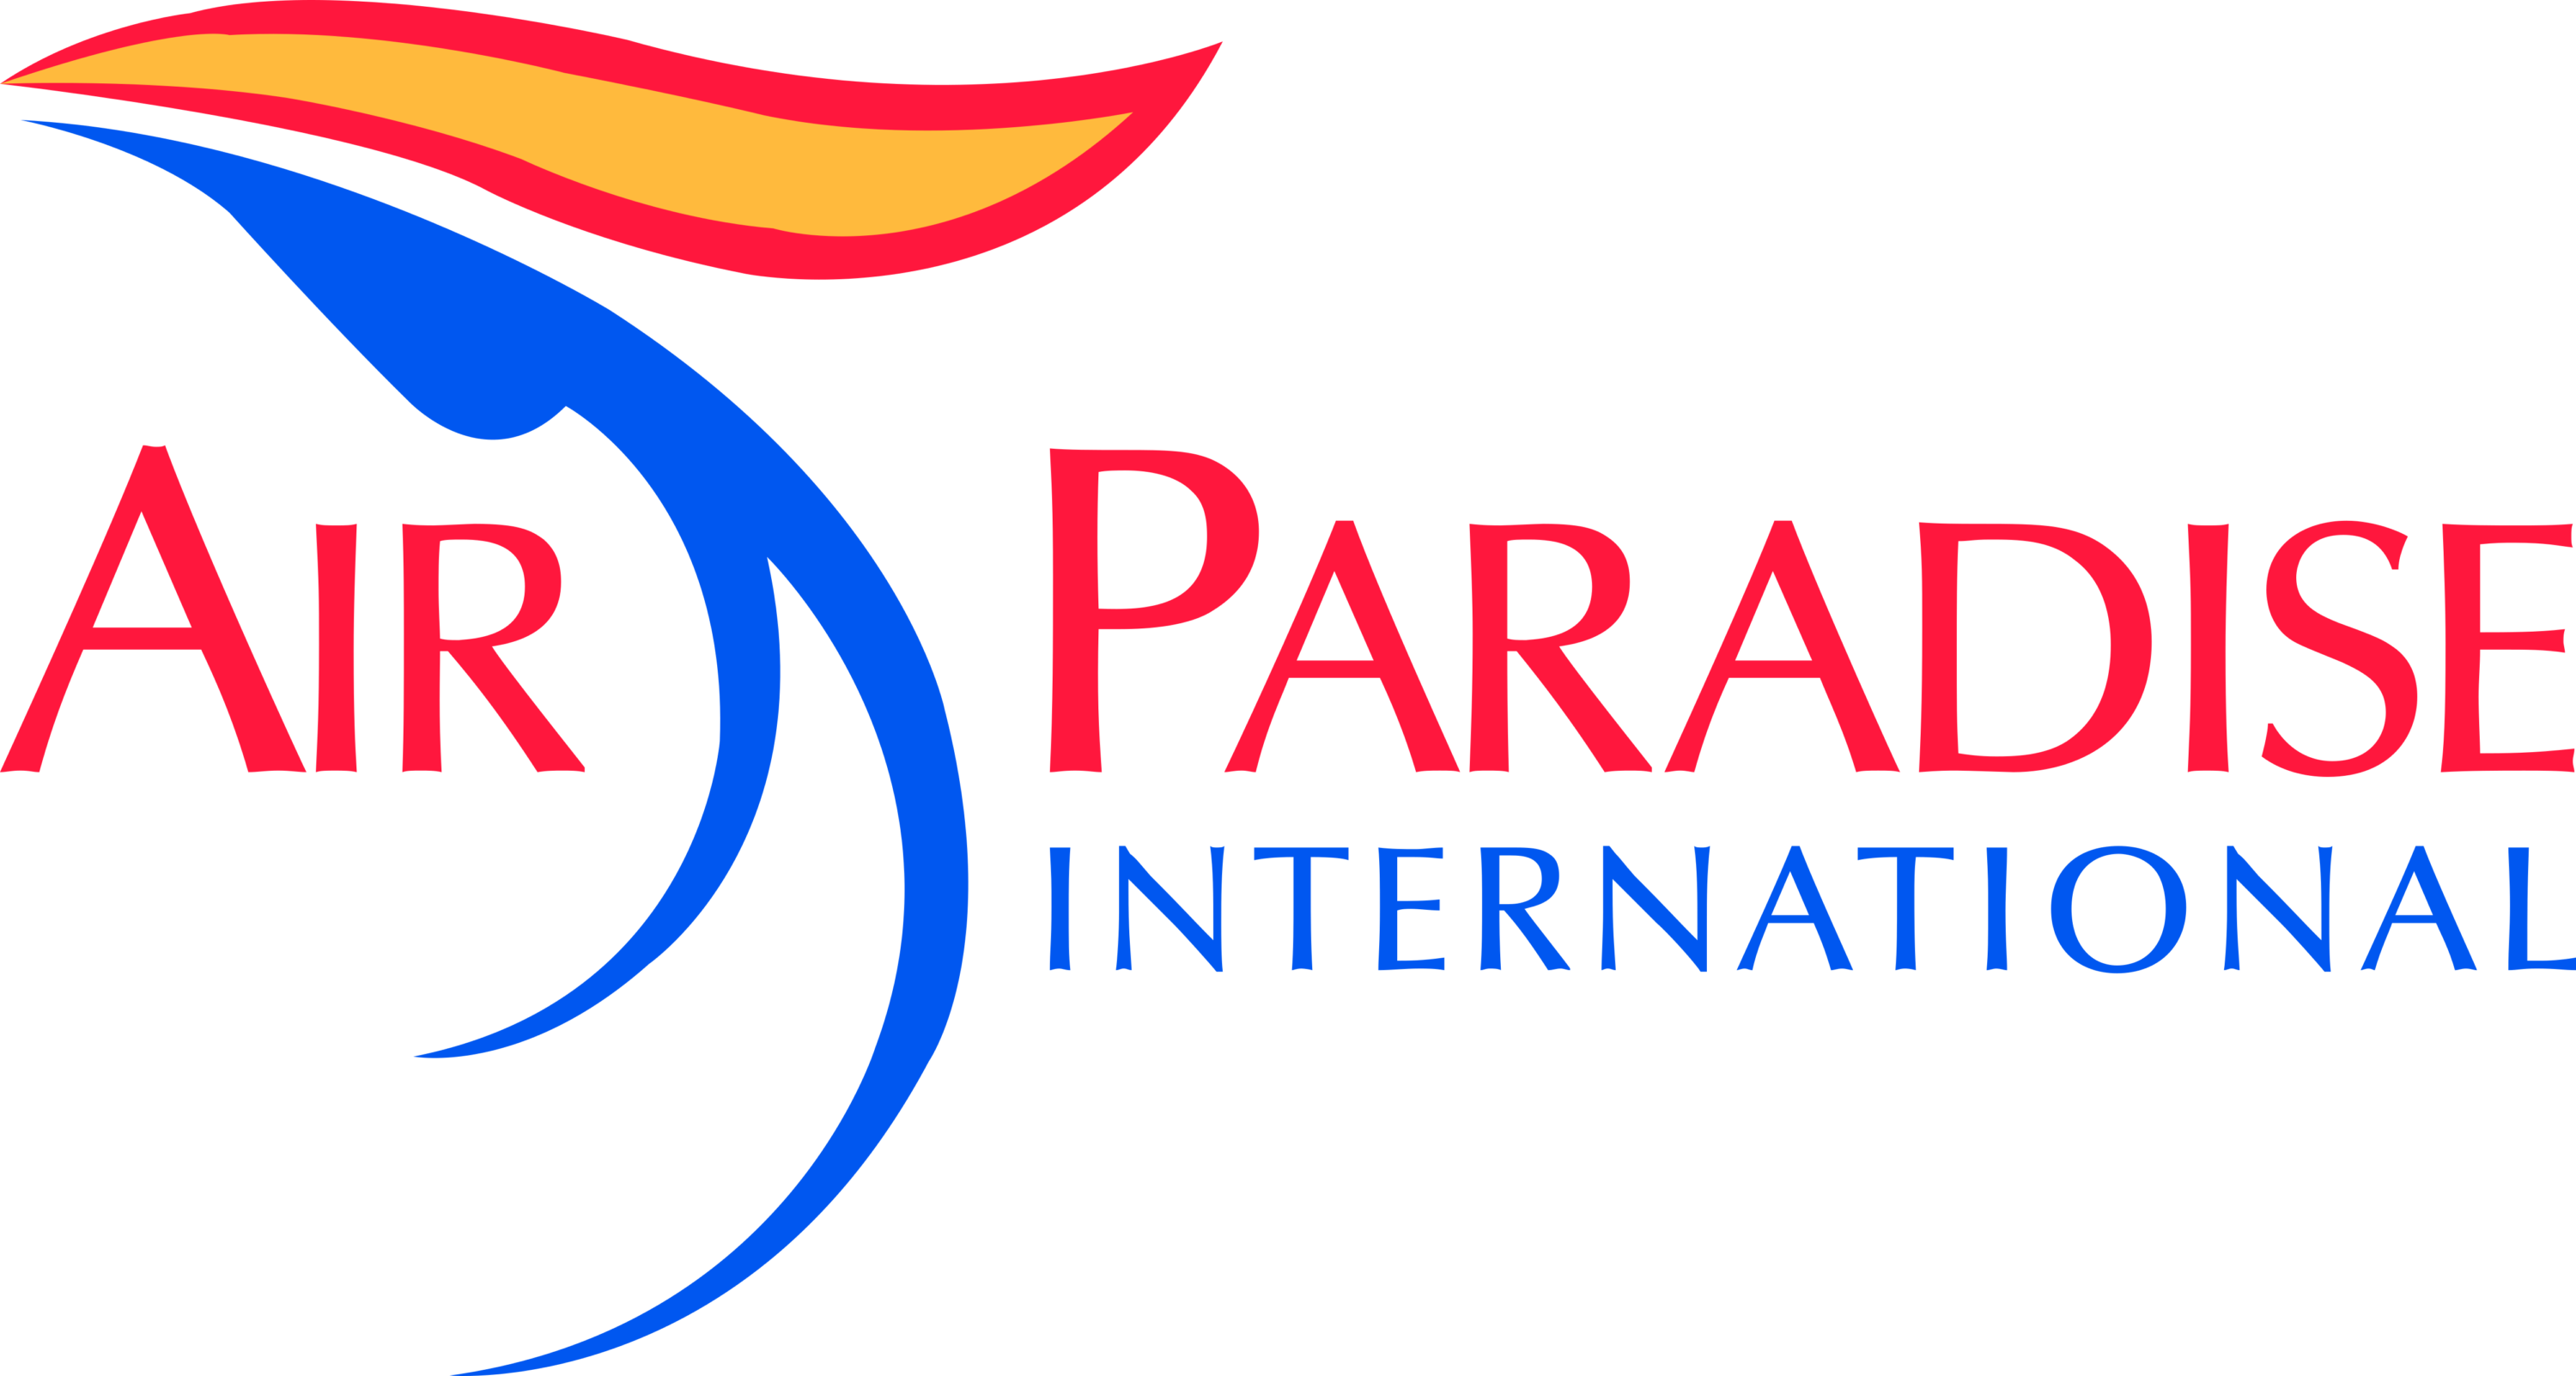 Air Paradise International Logo